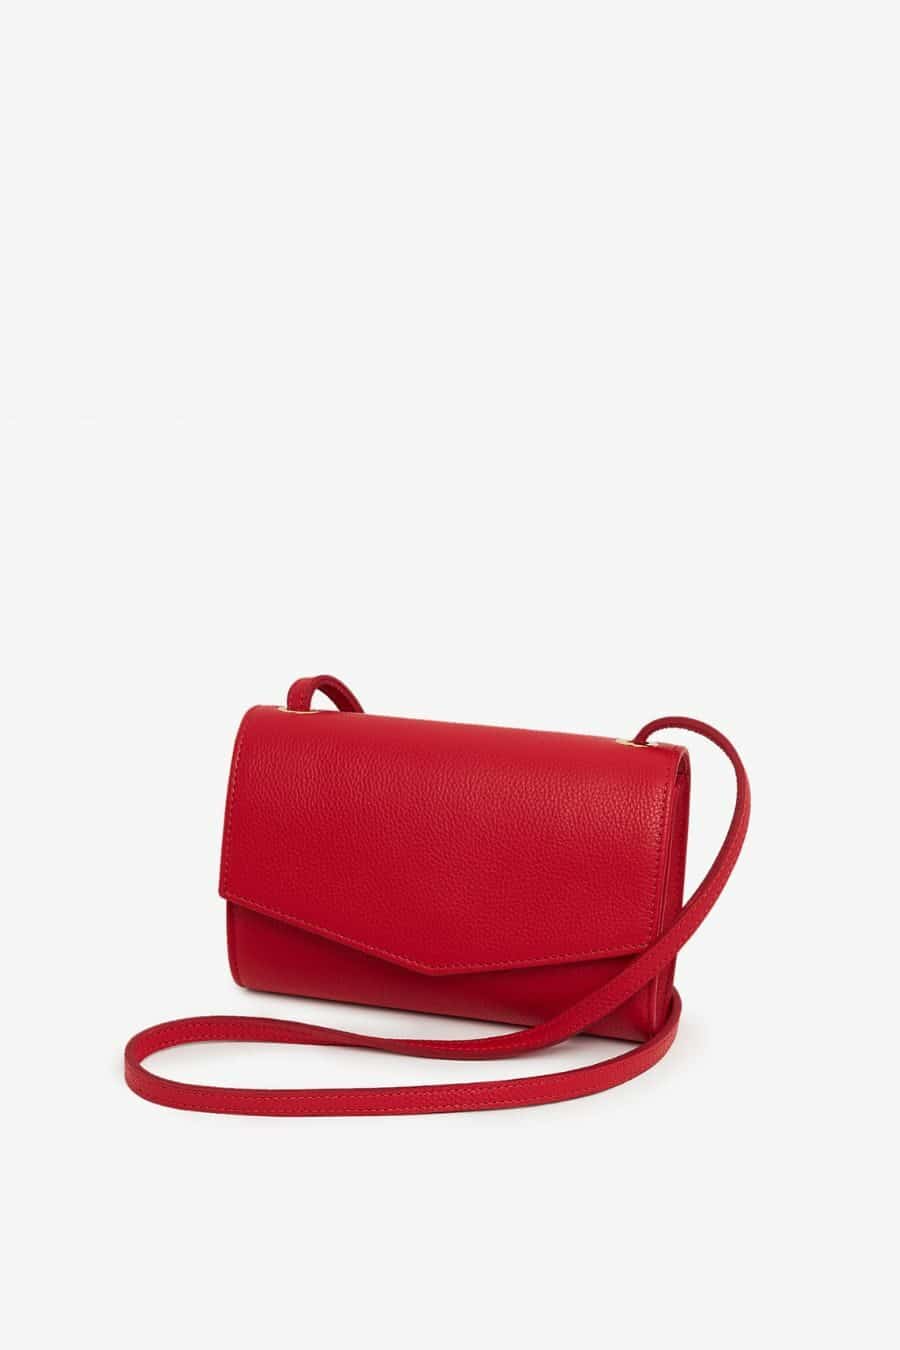 Rita Row - Otti Mini Bag - Red